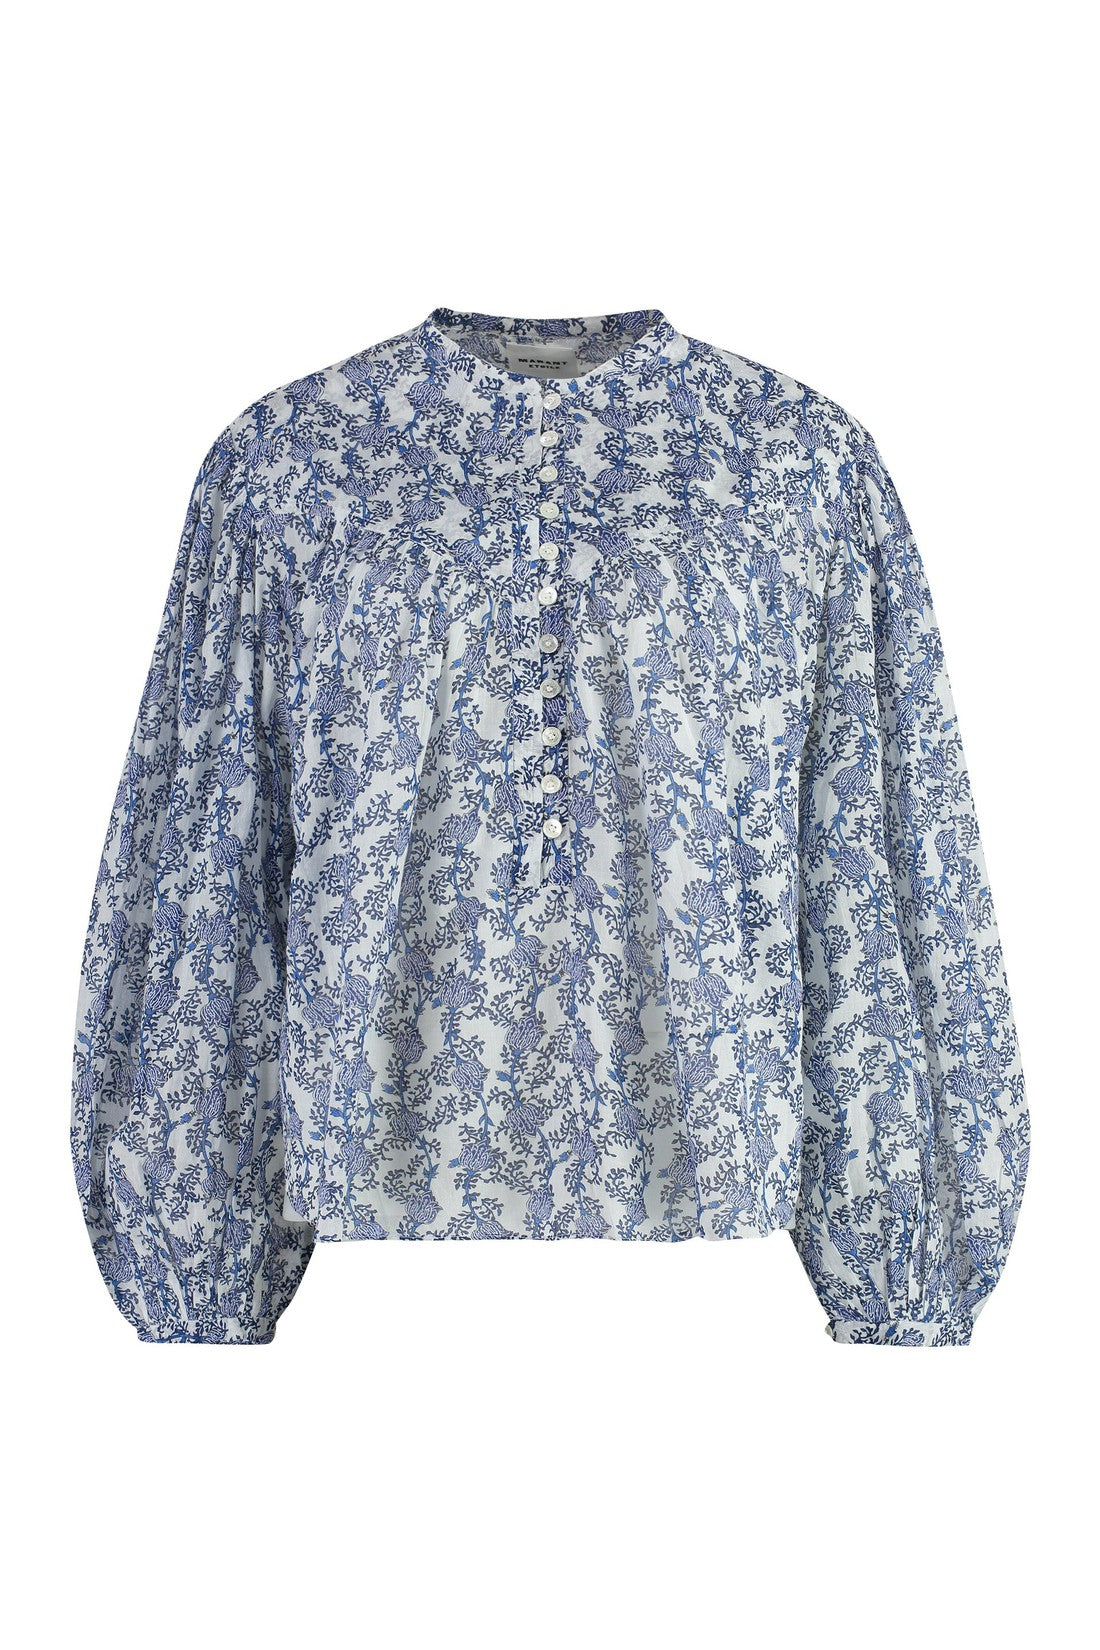 Isabel Marant Étoile-OUTLET-SALE-Salika Floral print cotton blouse-ARCHIVIST